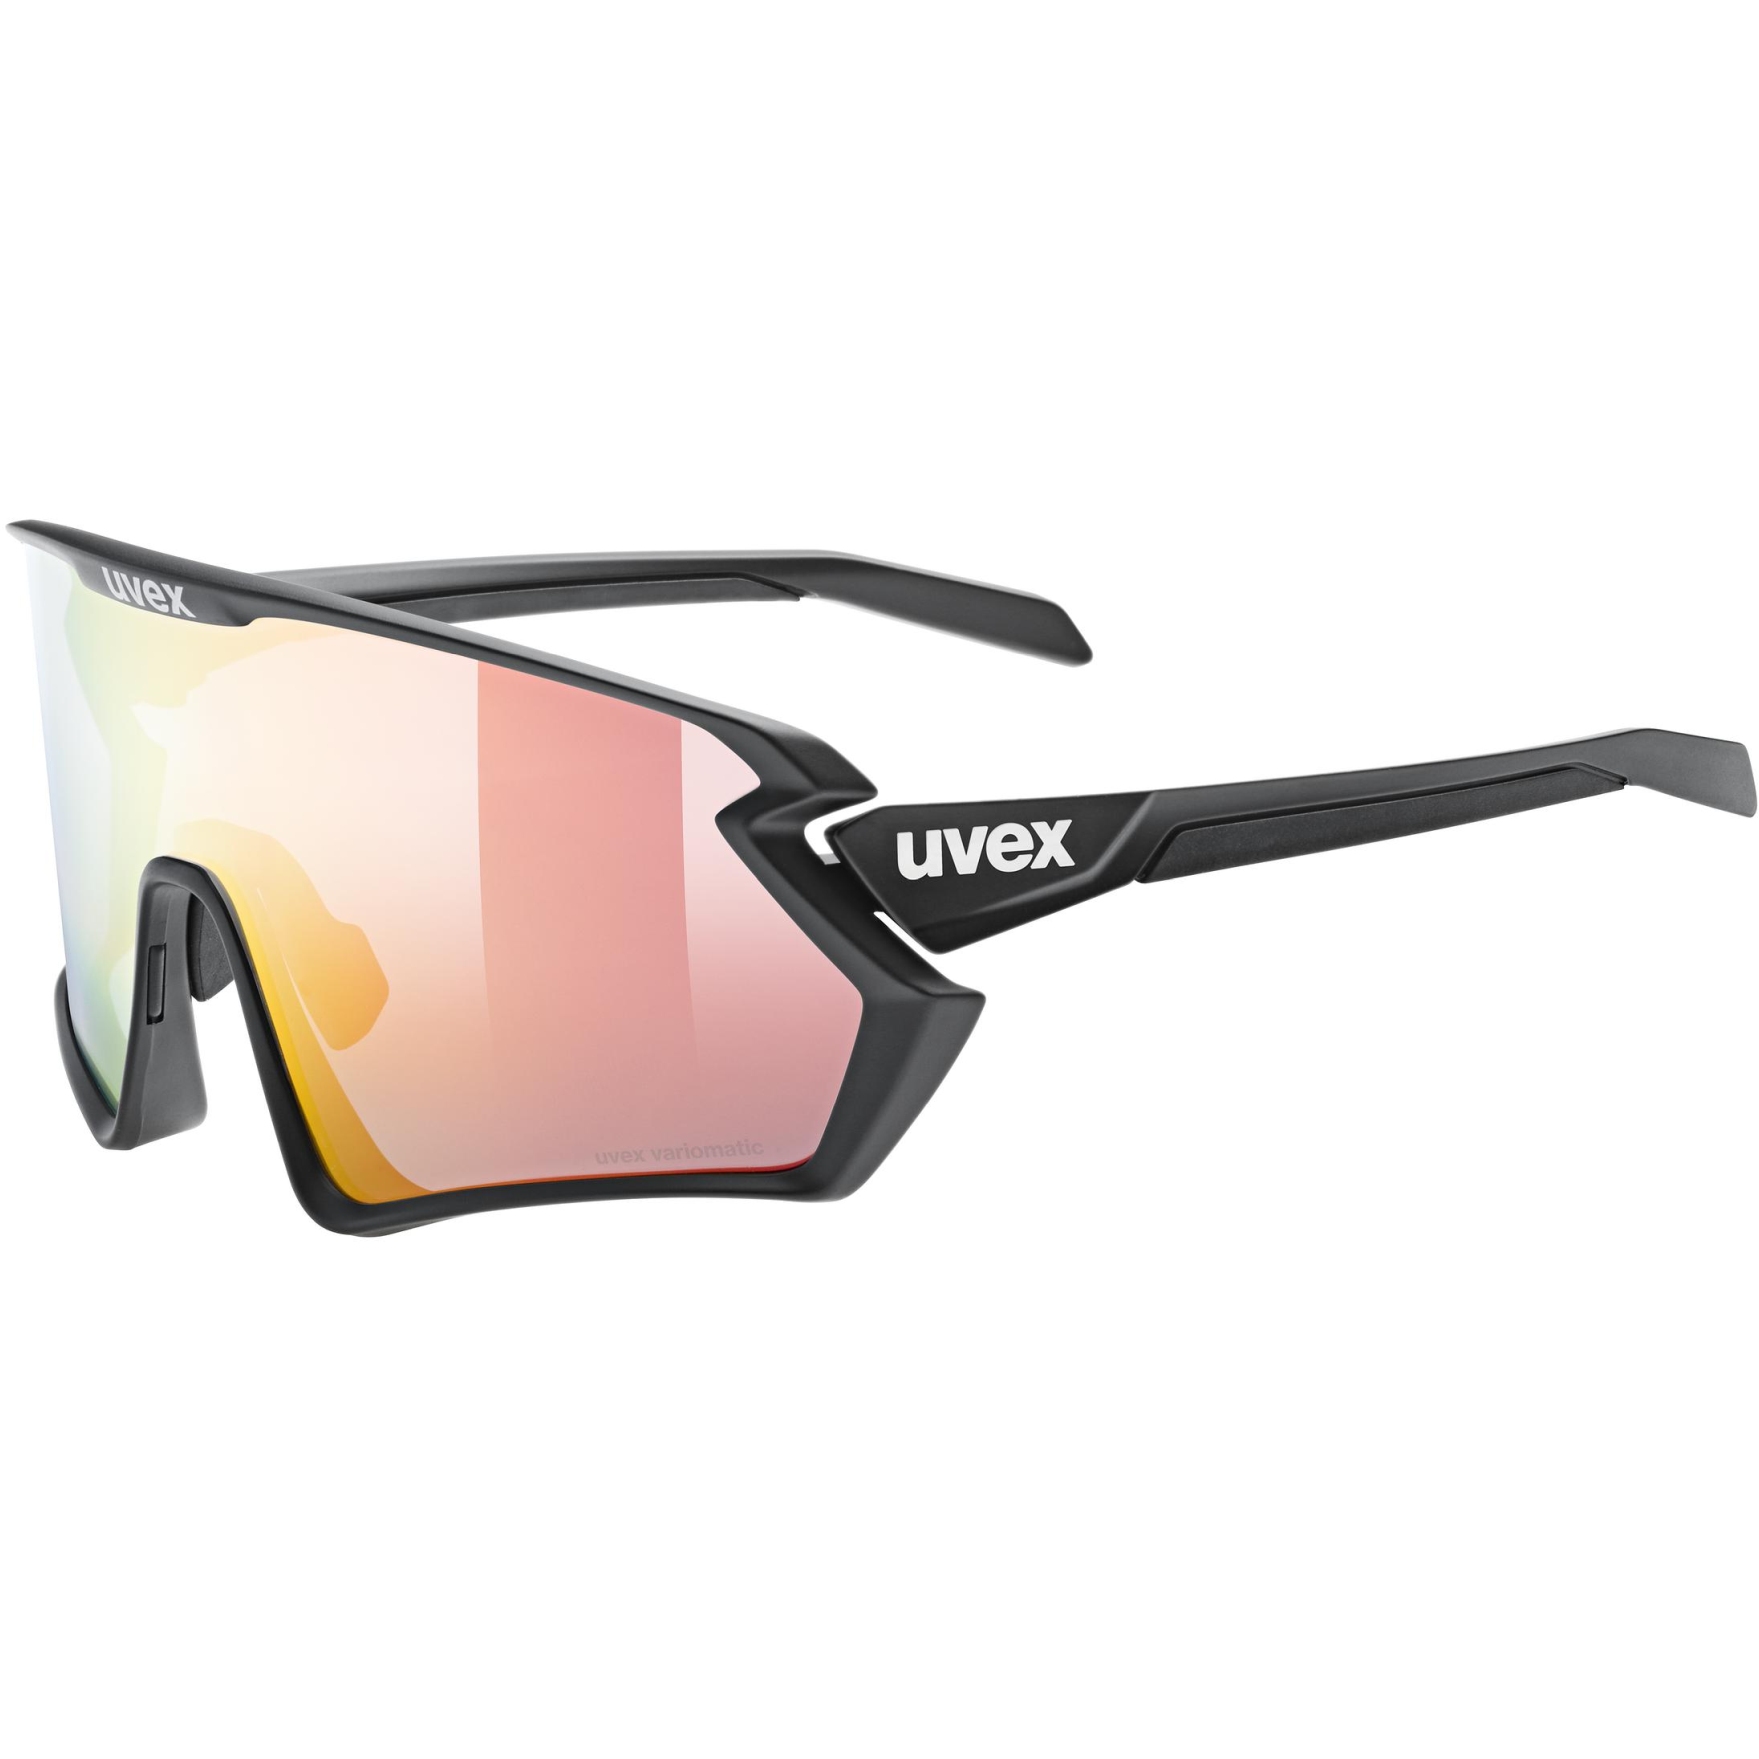 Produktbild von Uvex sportstyle 231 2.0 V Brille - black matt/variomatic litemirror red